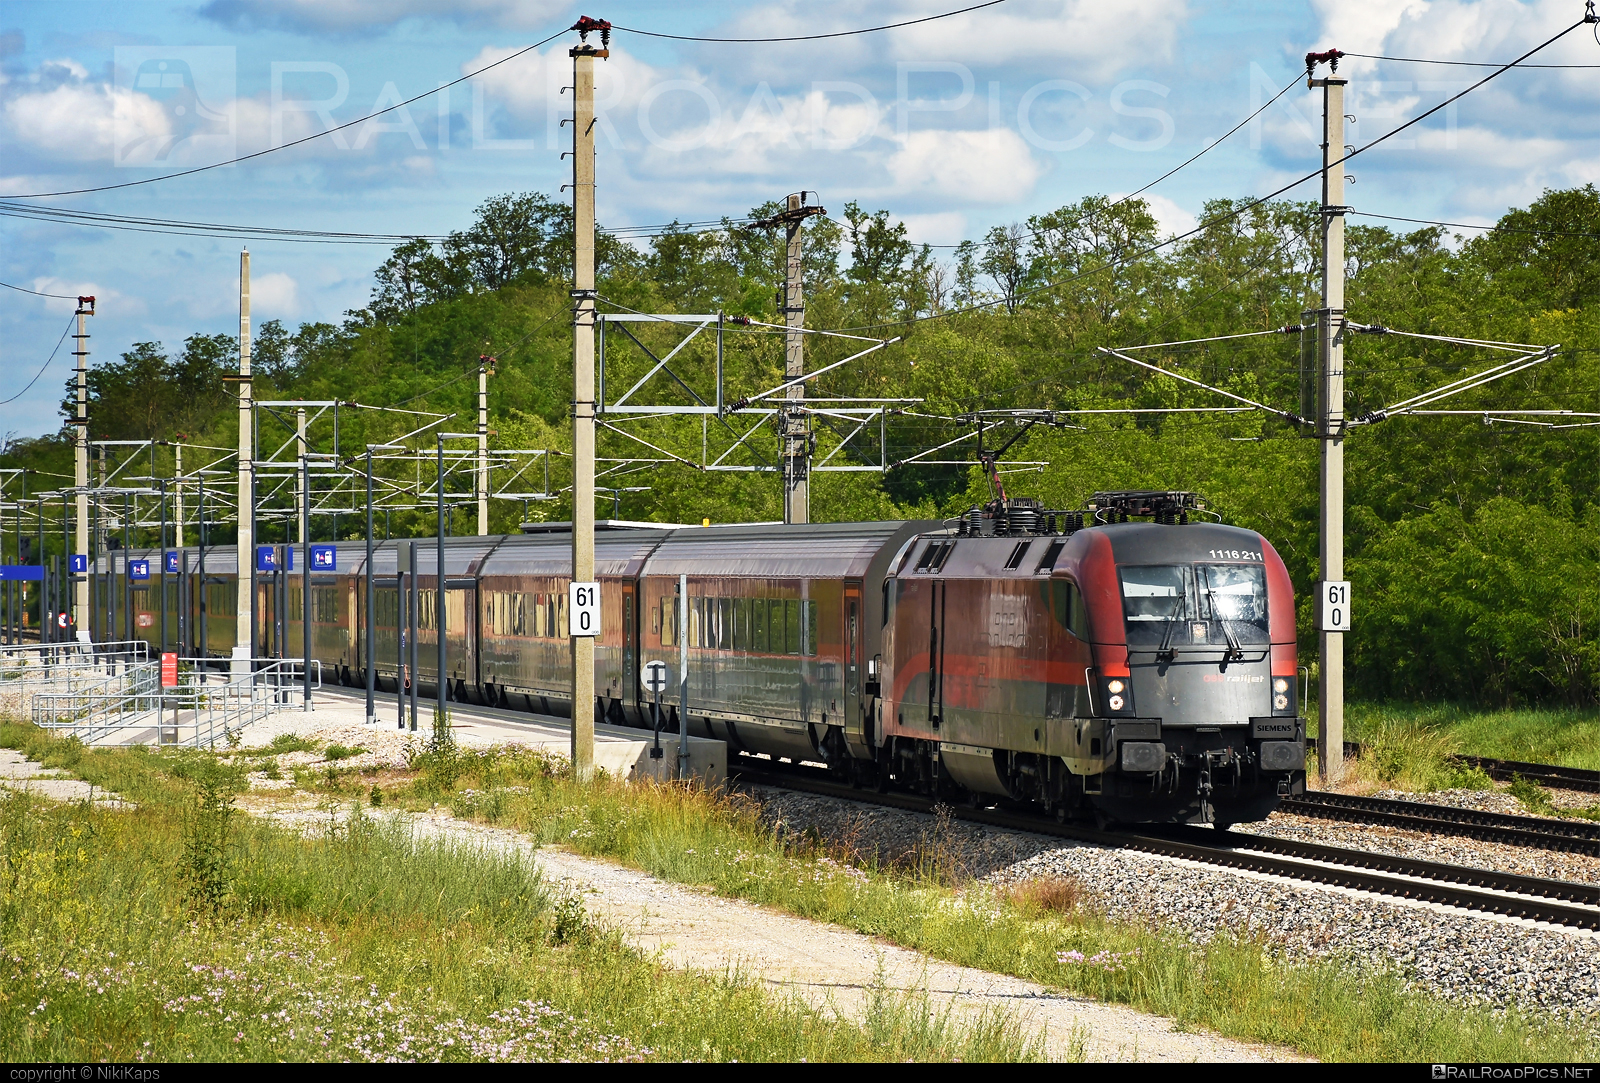 Siemens ES 64 U2 - 1116 211 operated by Österreichische Bundesbahnen #es64 #es64u2 #eurosprinter #obb #obbrailjet #osterreichischebundesbahnen #railjet #siemens #siemensEs64 #siemensEs64u2 #siemenstaurus #taurus #tauruslocomotive